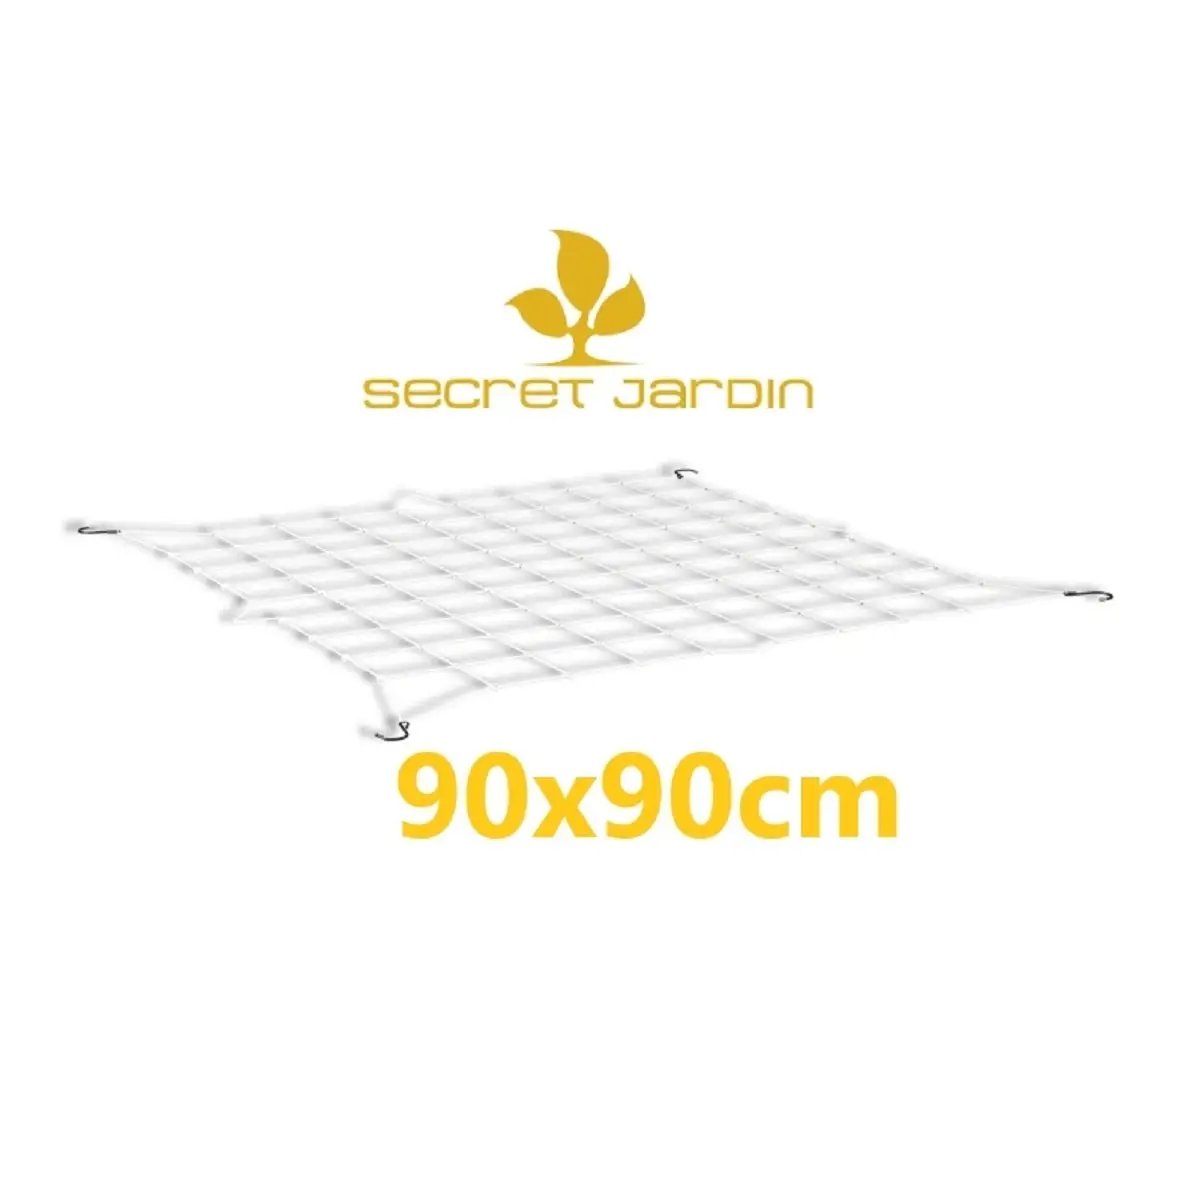 Secret Jardin WebIt 90 - 90x90cm